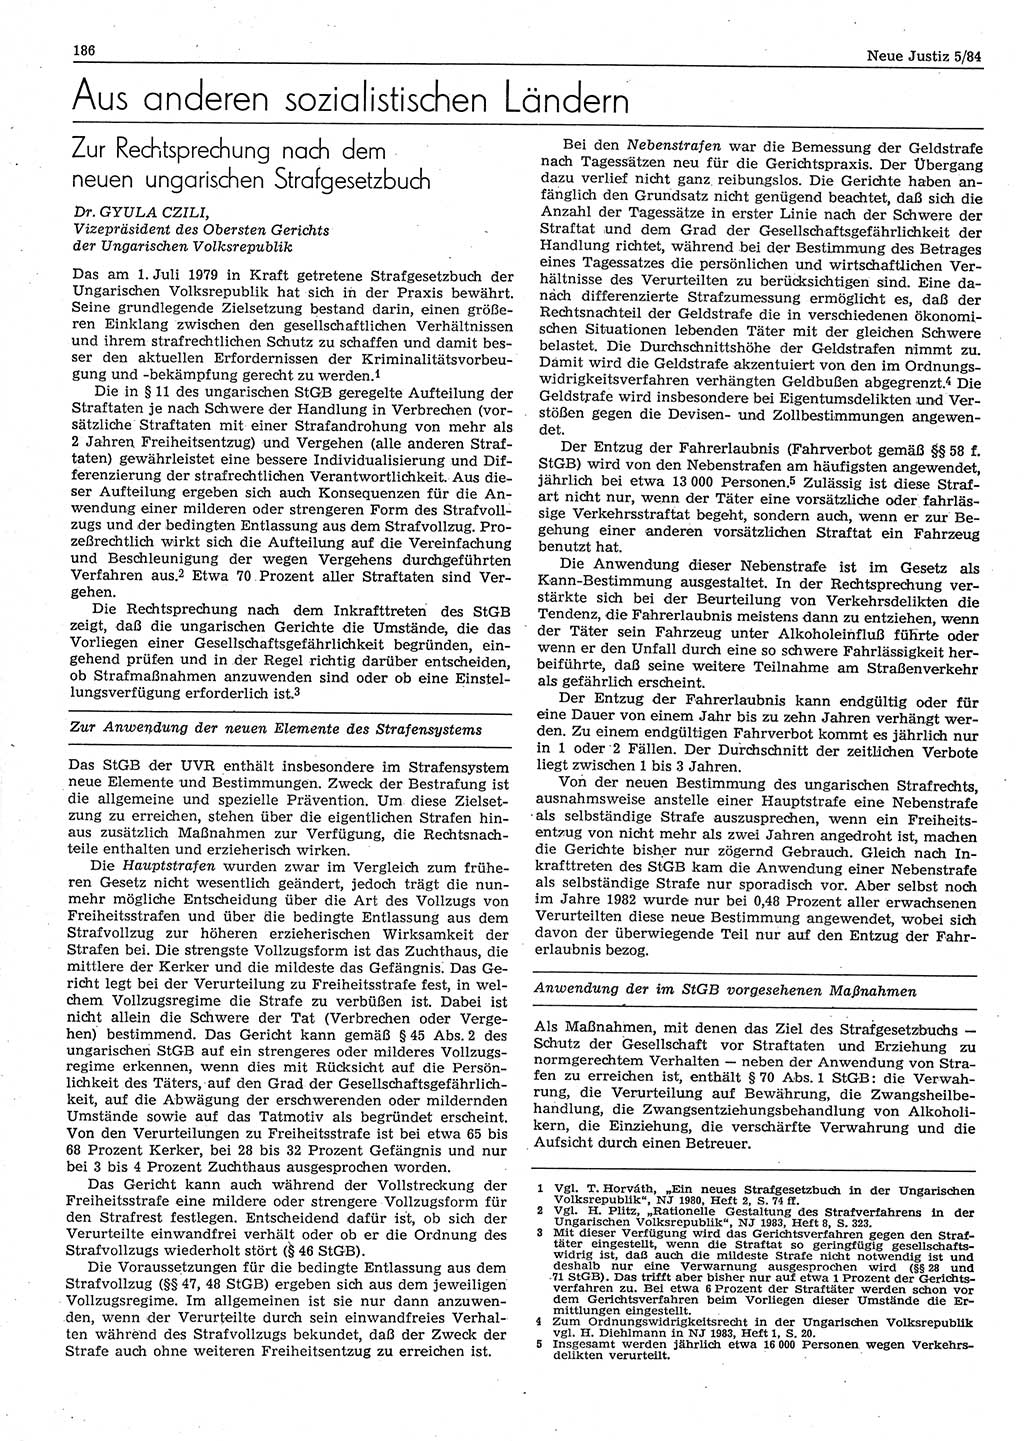 Neue Justiz (NJ), Zeitschrift für sozialistisches Recht und Gesetzlichkeit [Deutsche Demokratische Republik (DDR)], 38. Jahrgang 1984, Seite 186 (NJ DDR 1984, S. 186)